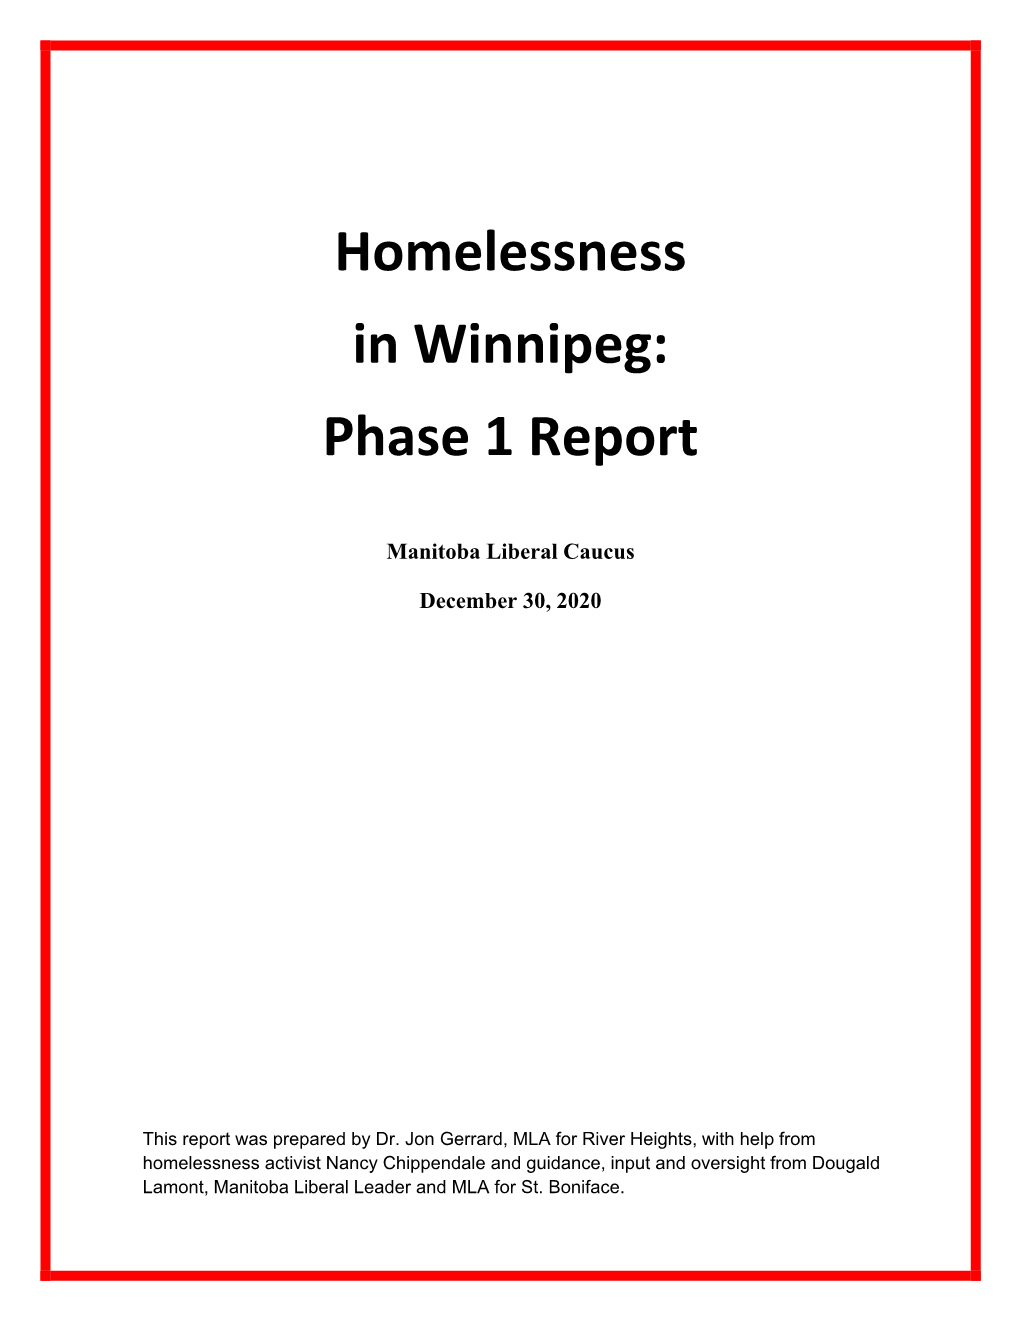 Homelessness in Winnipeg: Phase 1 Report